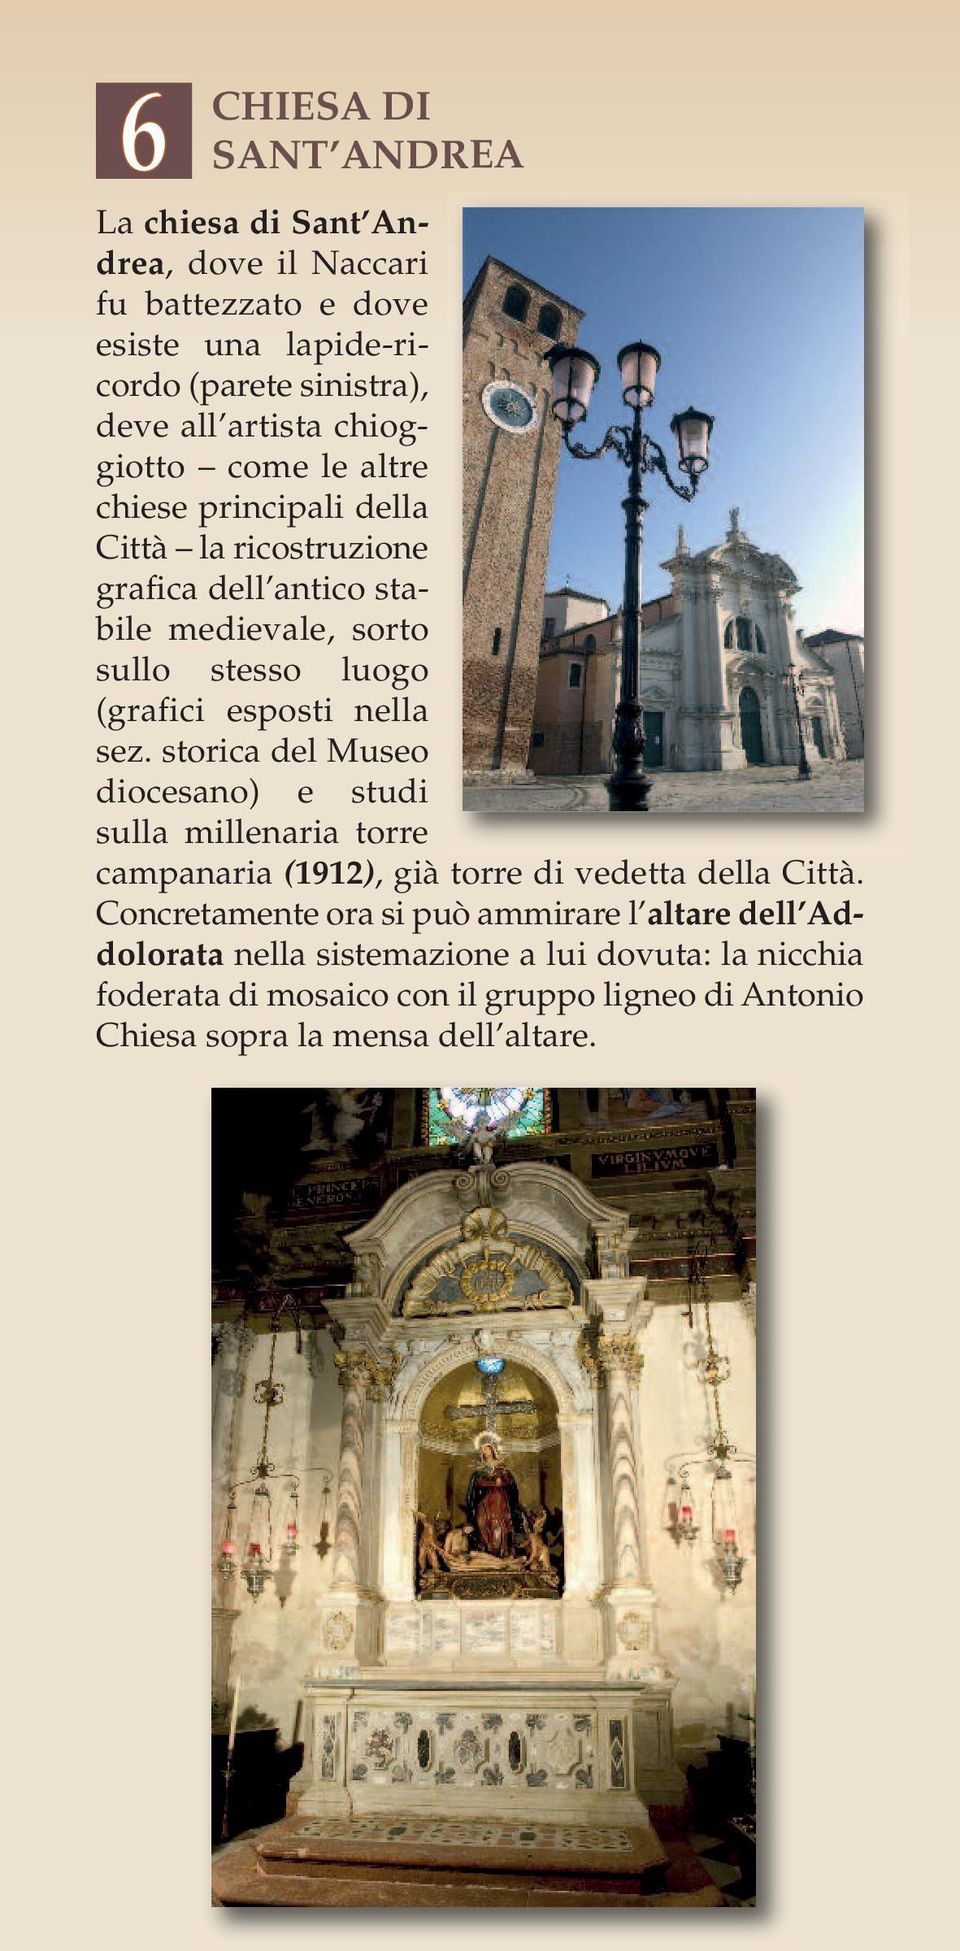 nella sez. storica del Museo diocesano) e studi sulla millenaria torre campanaria (1912), già torre di vedetta della Città.